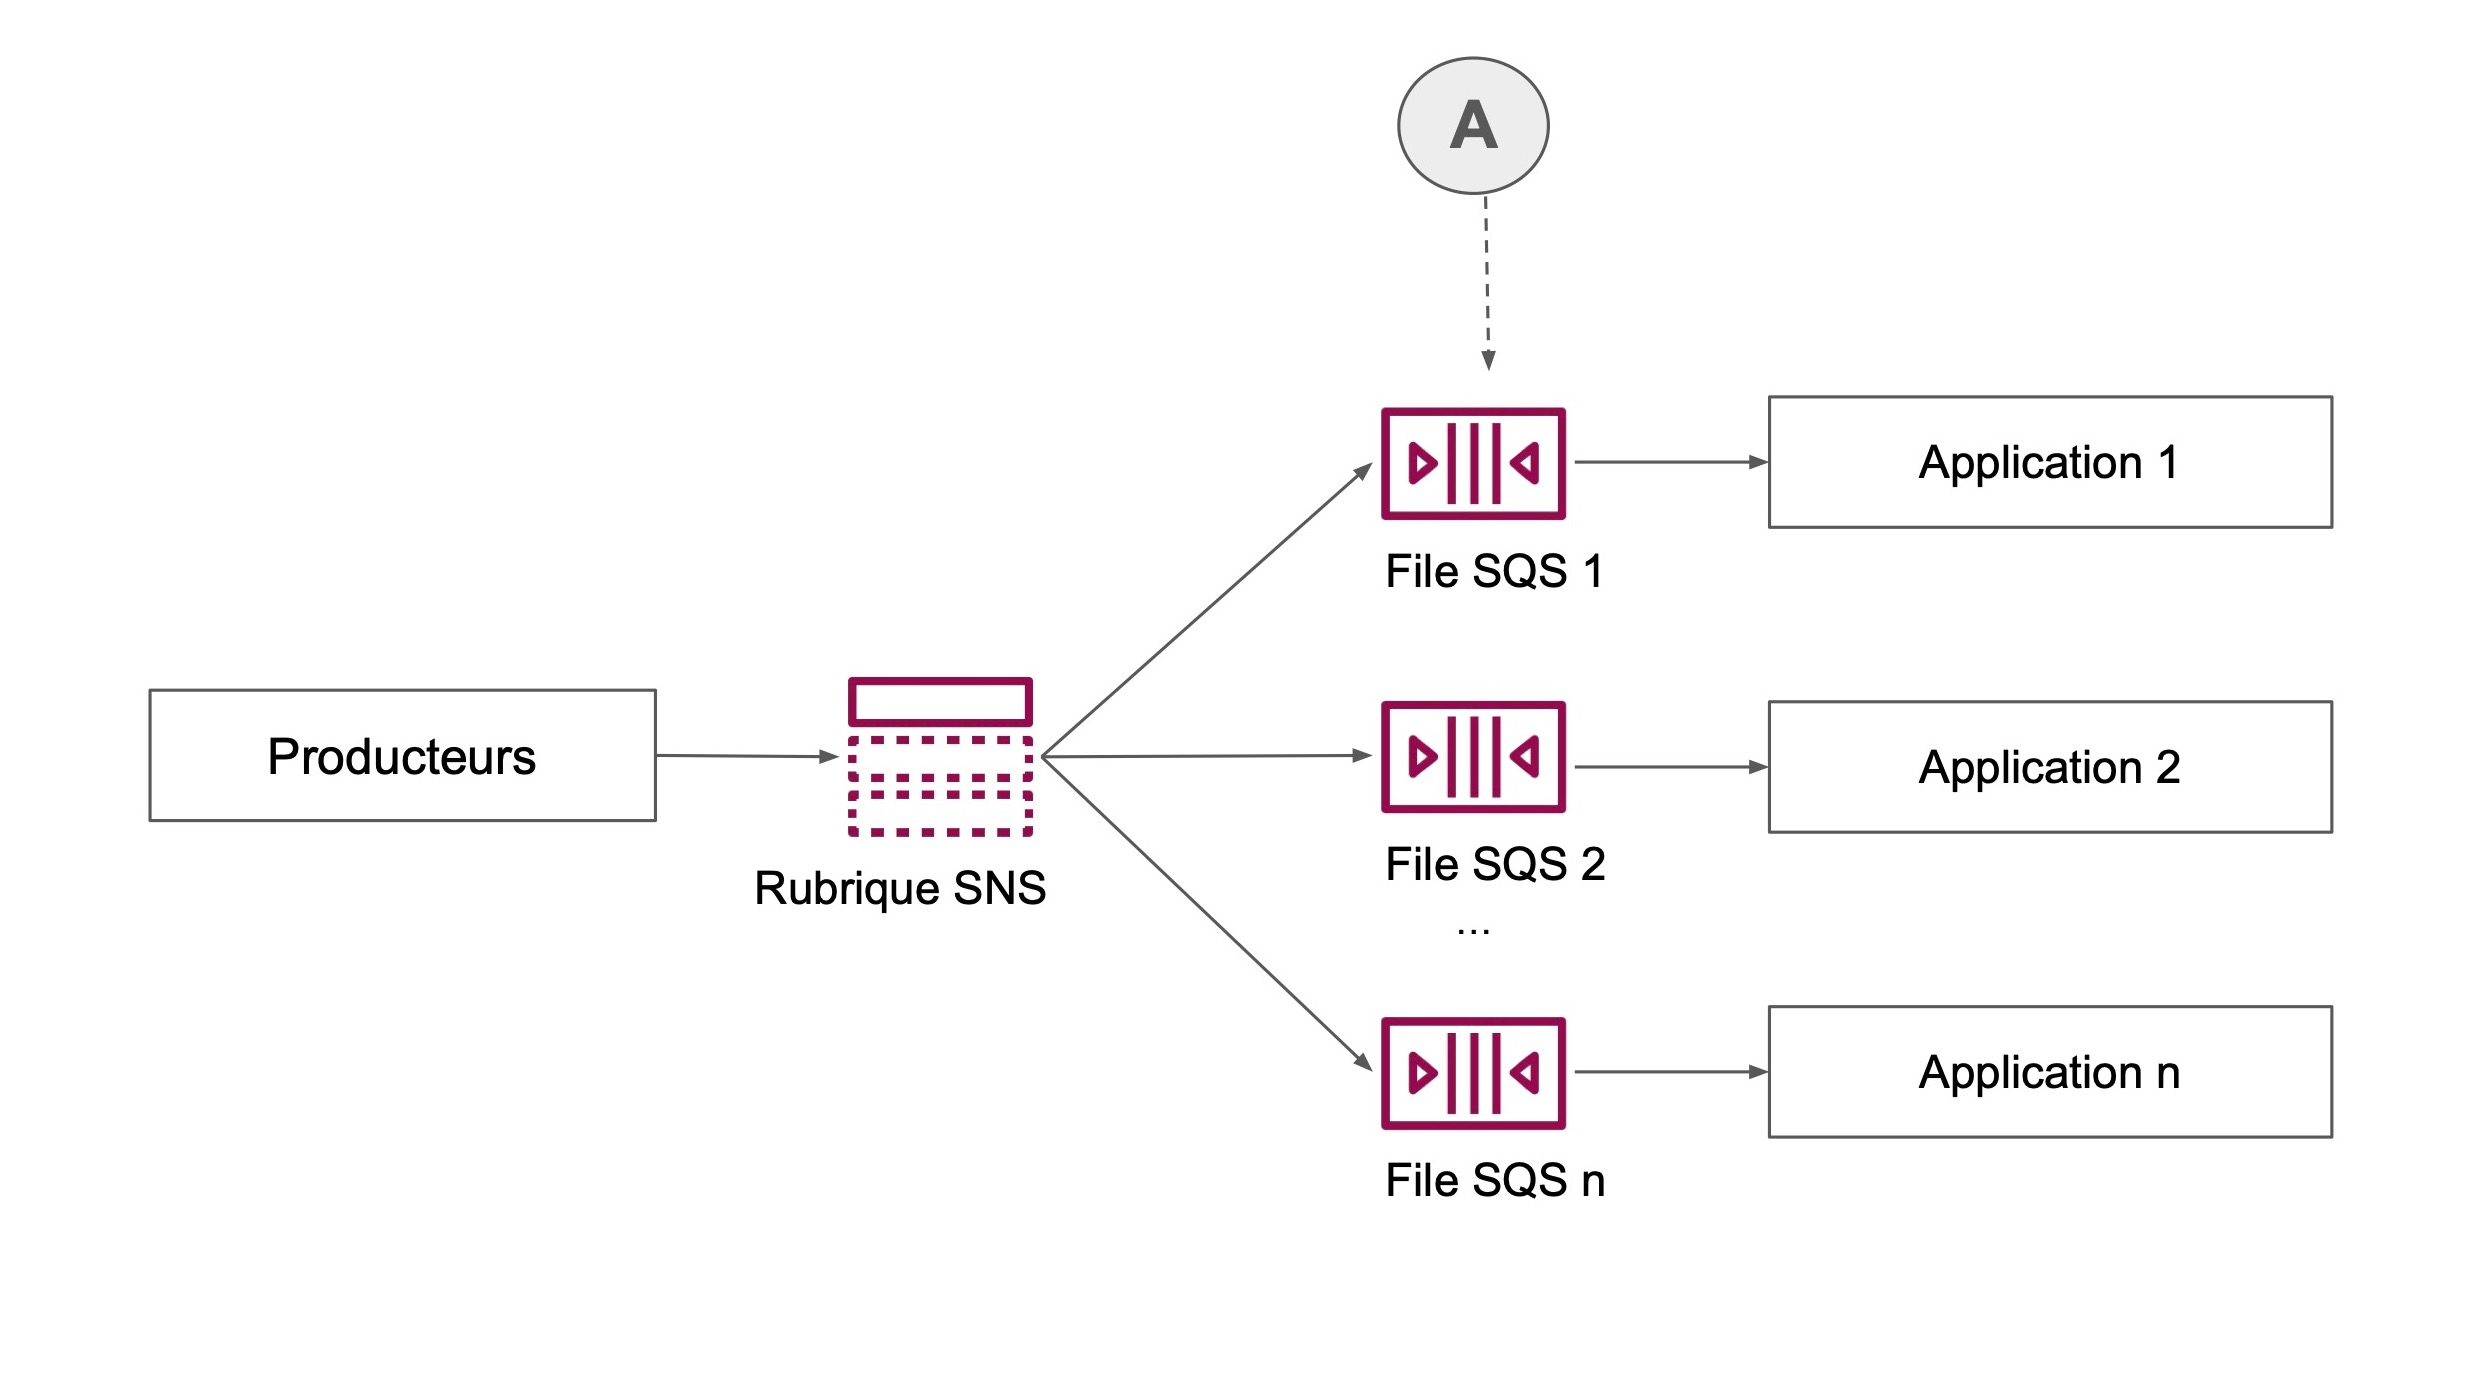 Un chemin mène de producteurs vers Rubrique SNS, puis vers les files SQS (A) et les applications correspondantes